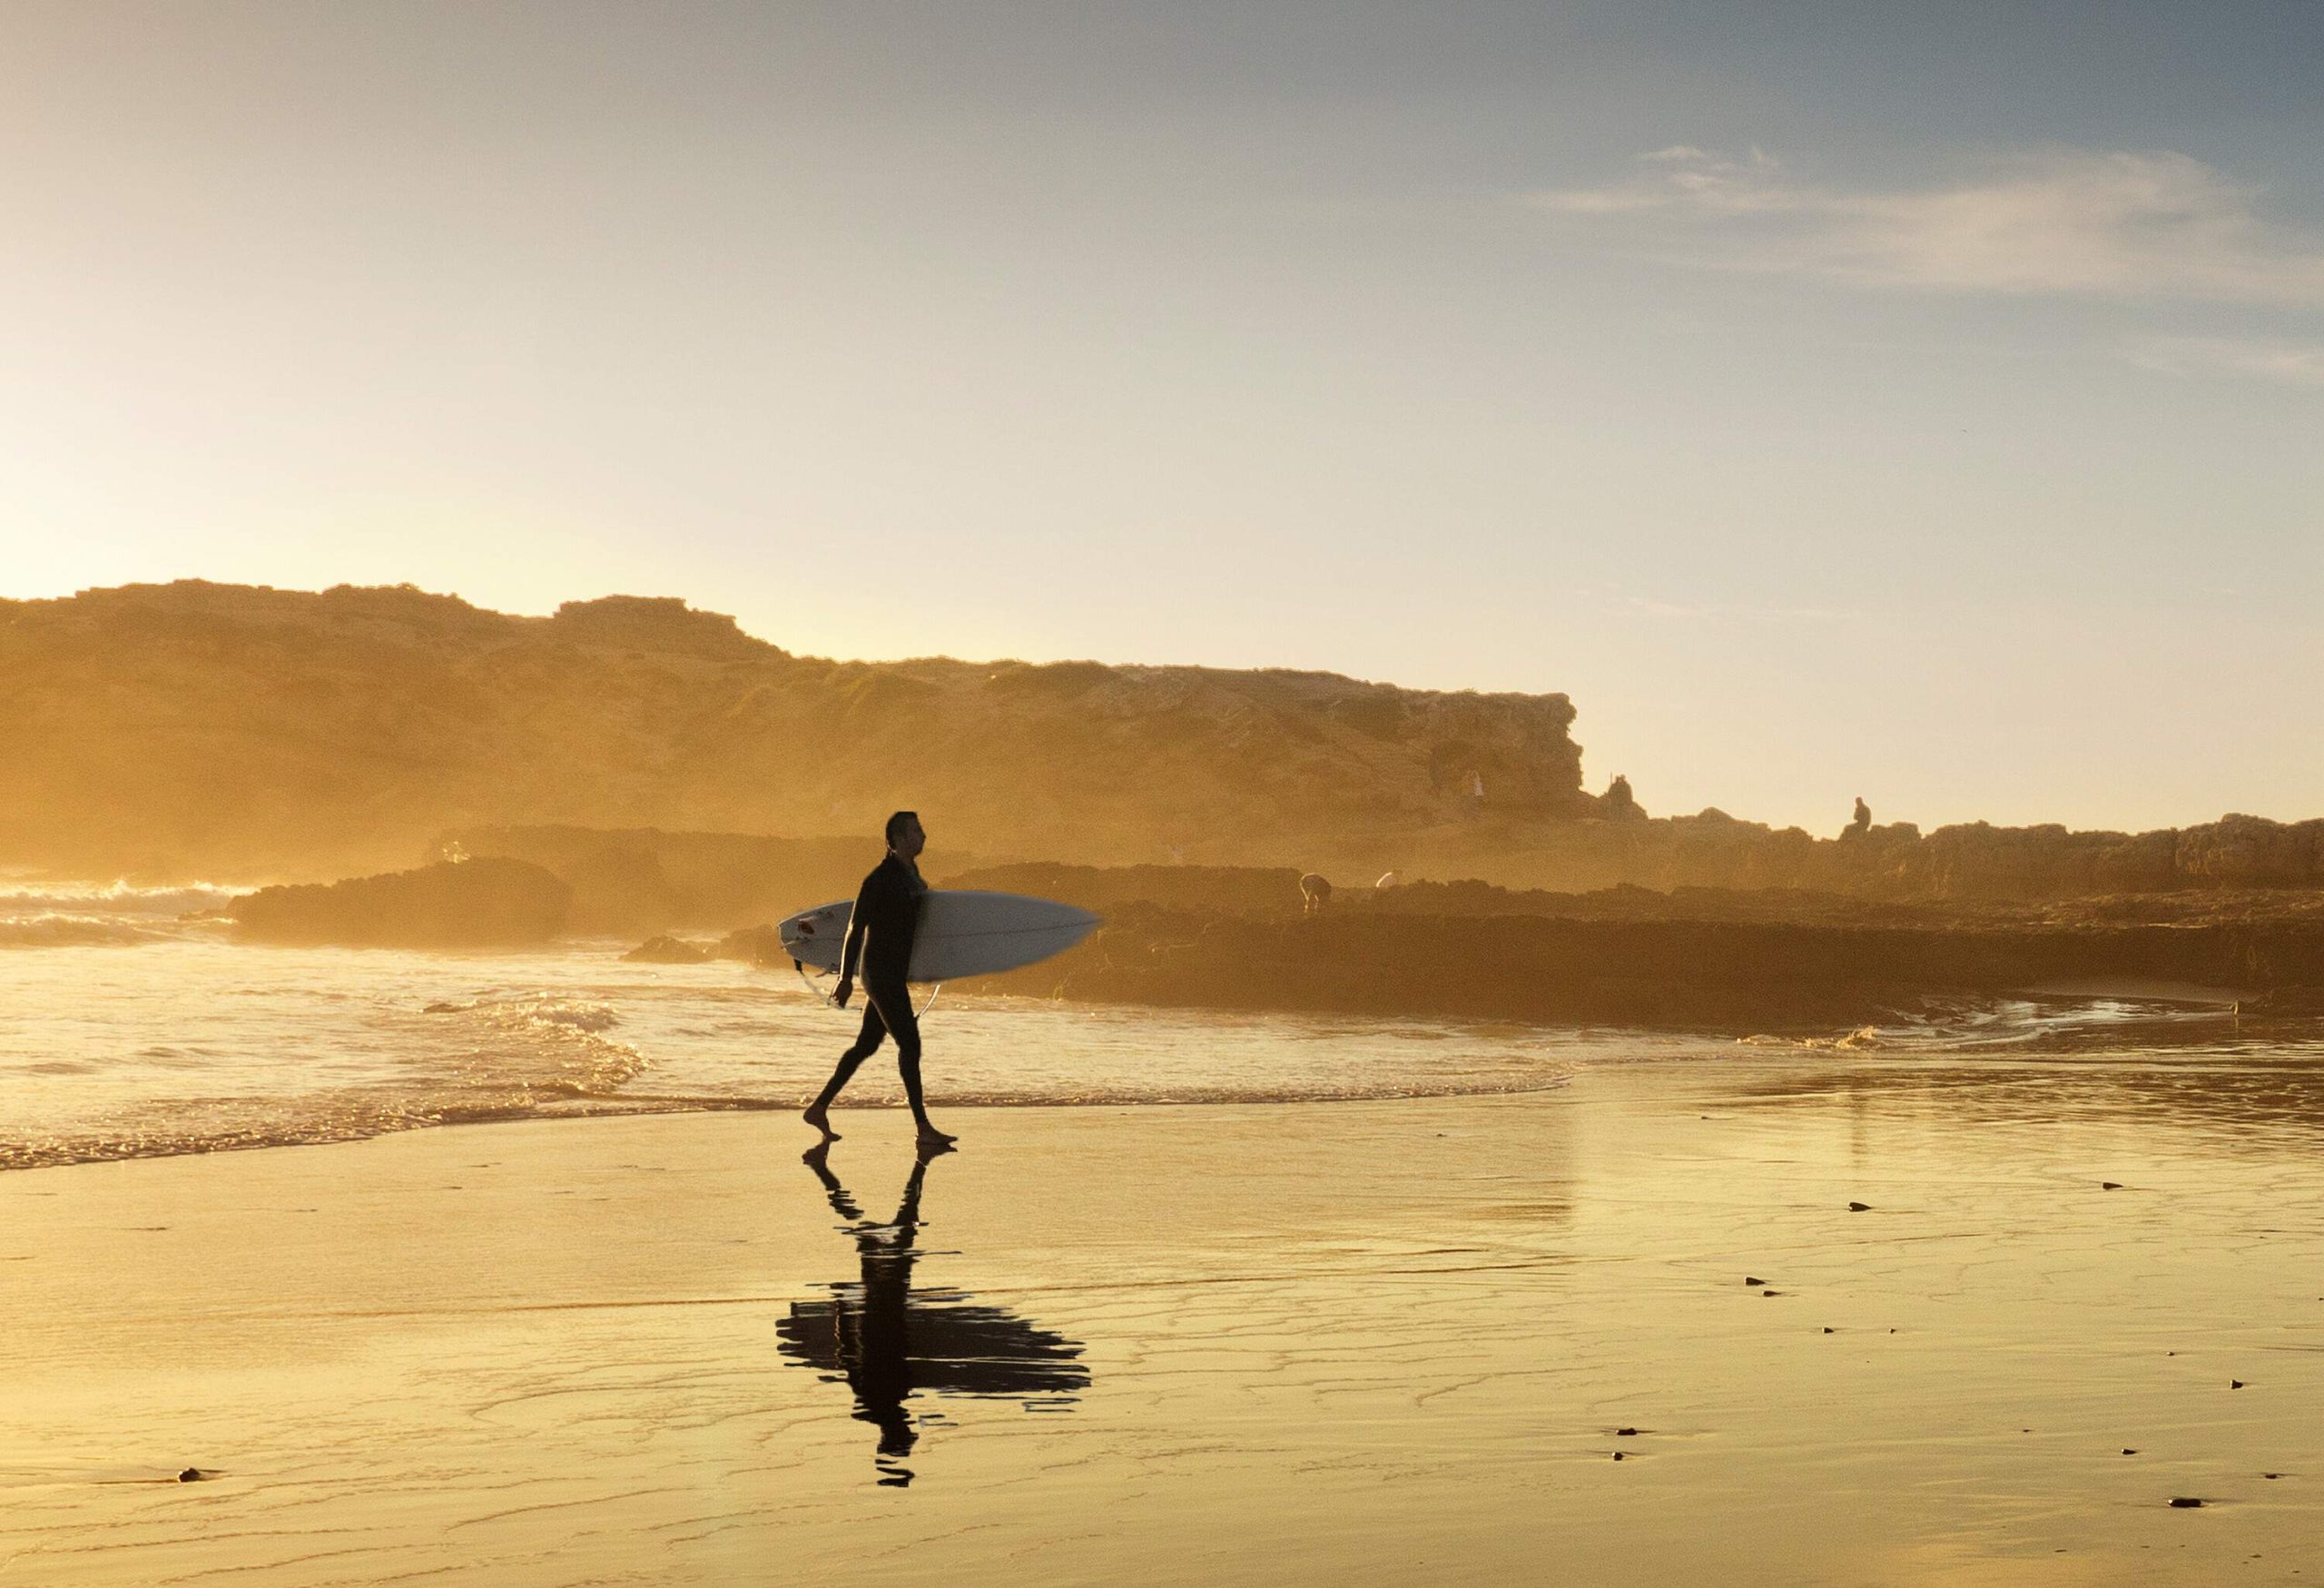 A man carrying a surfboard as he walks across the beach towards the coast.